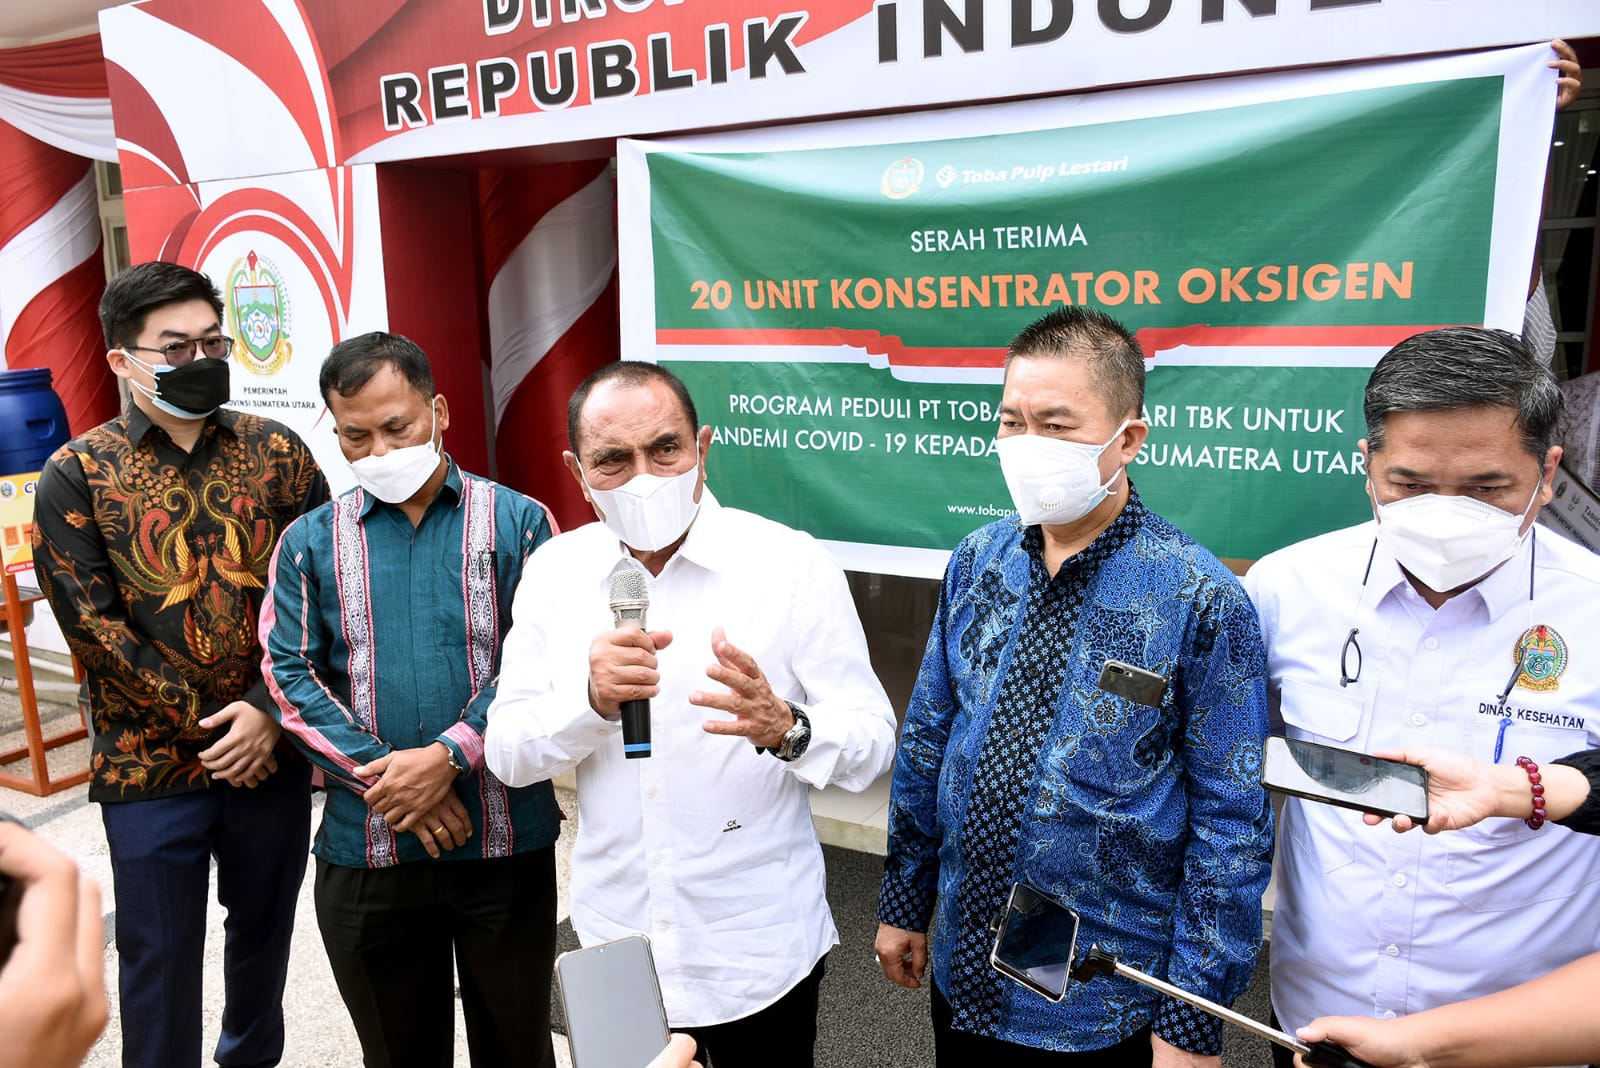 Gubernur Sumut Edy Rahmayadi menerima bantuan Konsentrator Oksigen dari Tanoto Foundation di Rumah Dinas Gubernur Sumut, Jalan Sudirman No. 41 Medan, Jum'at (27/8/2021).